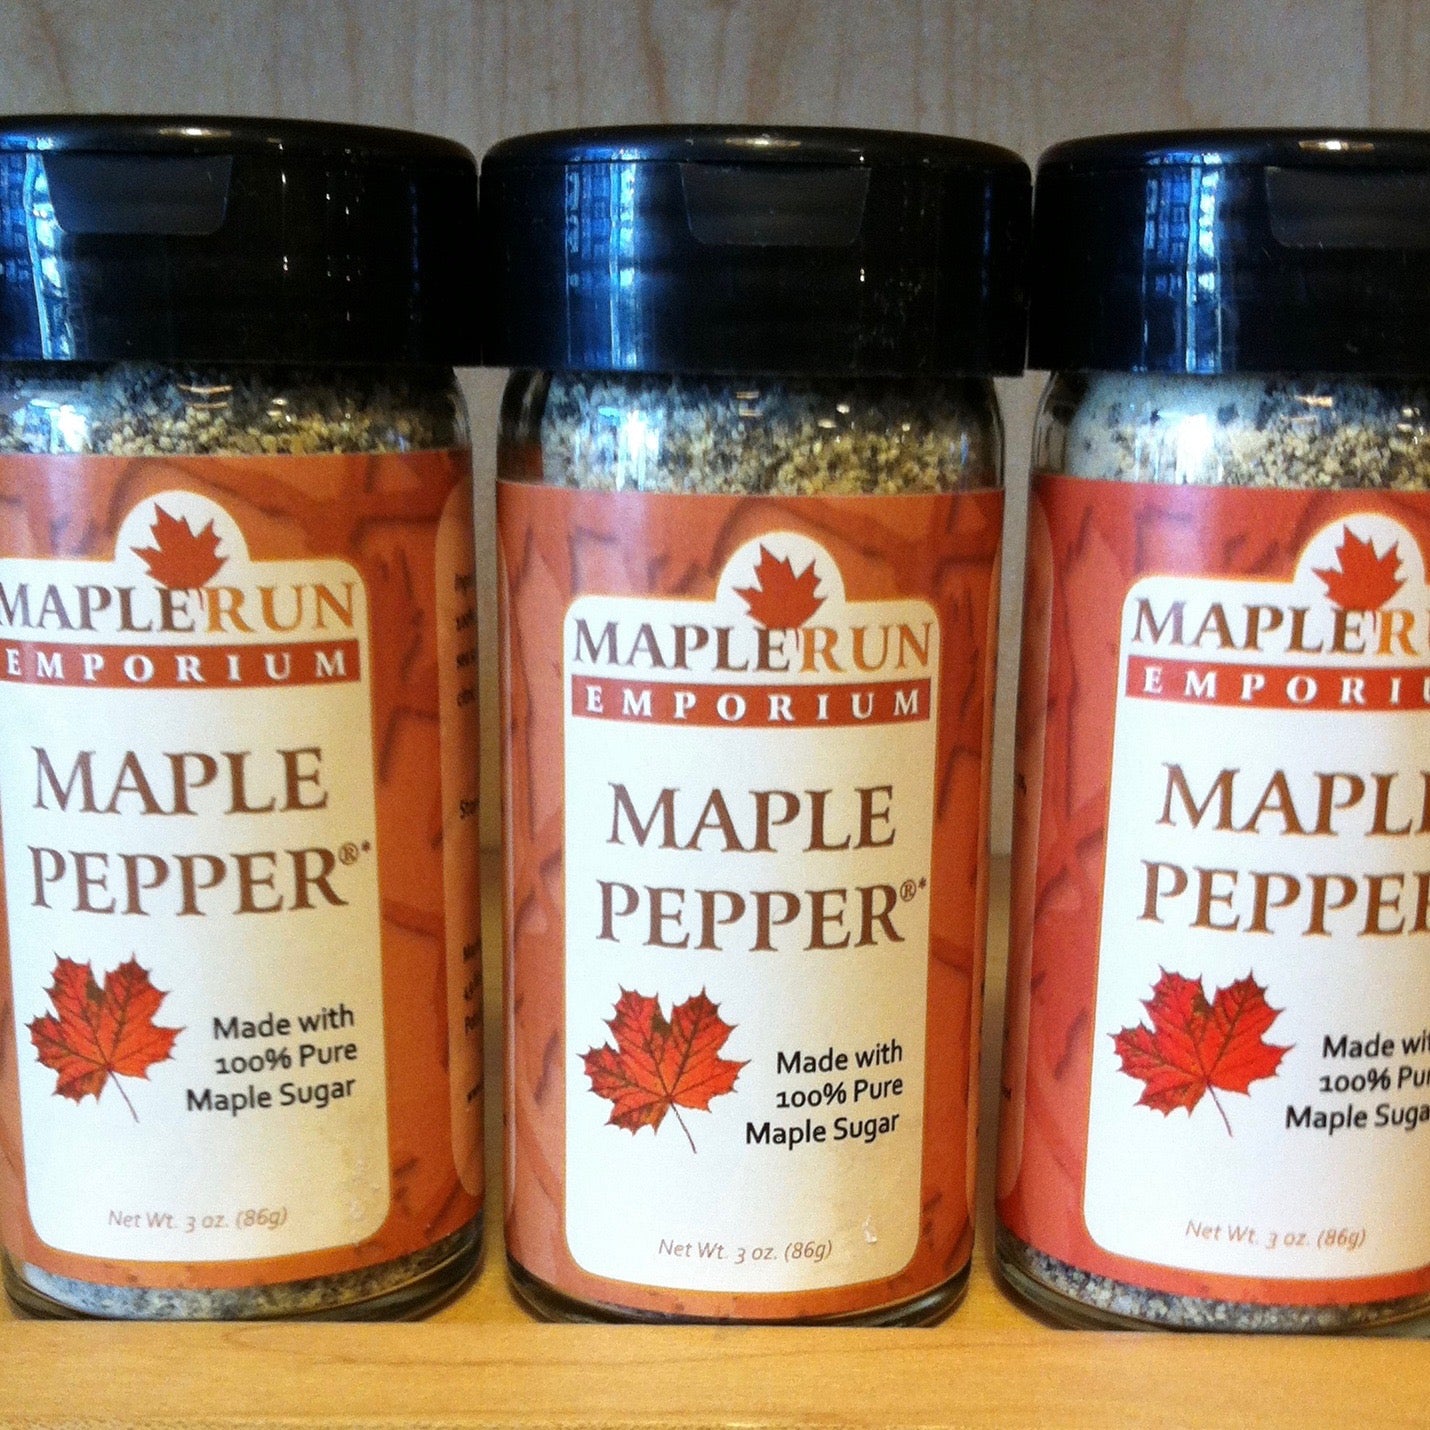 Maple Pepper® Original